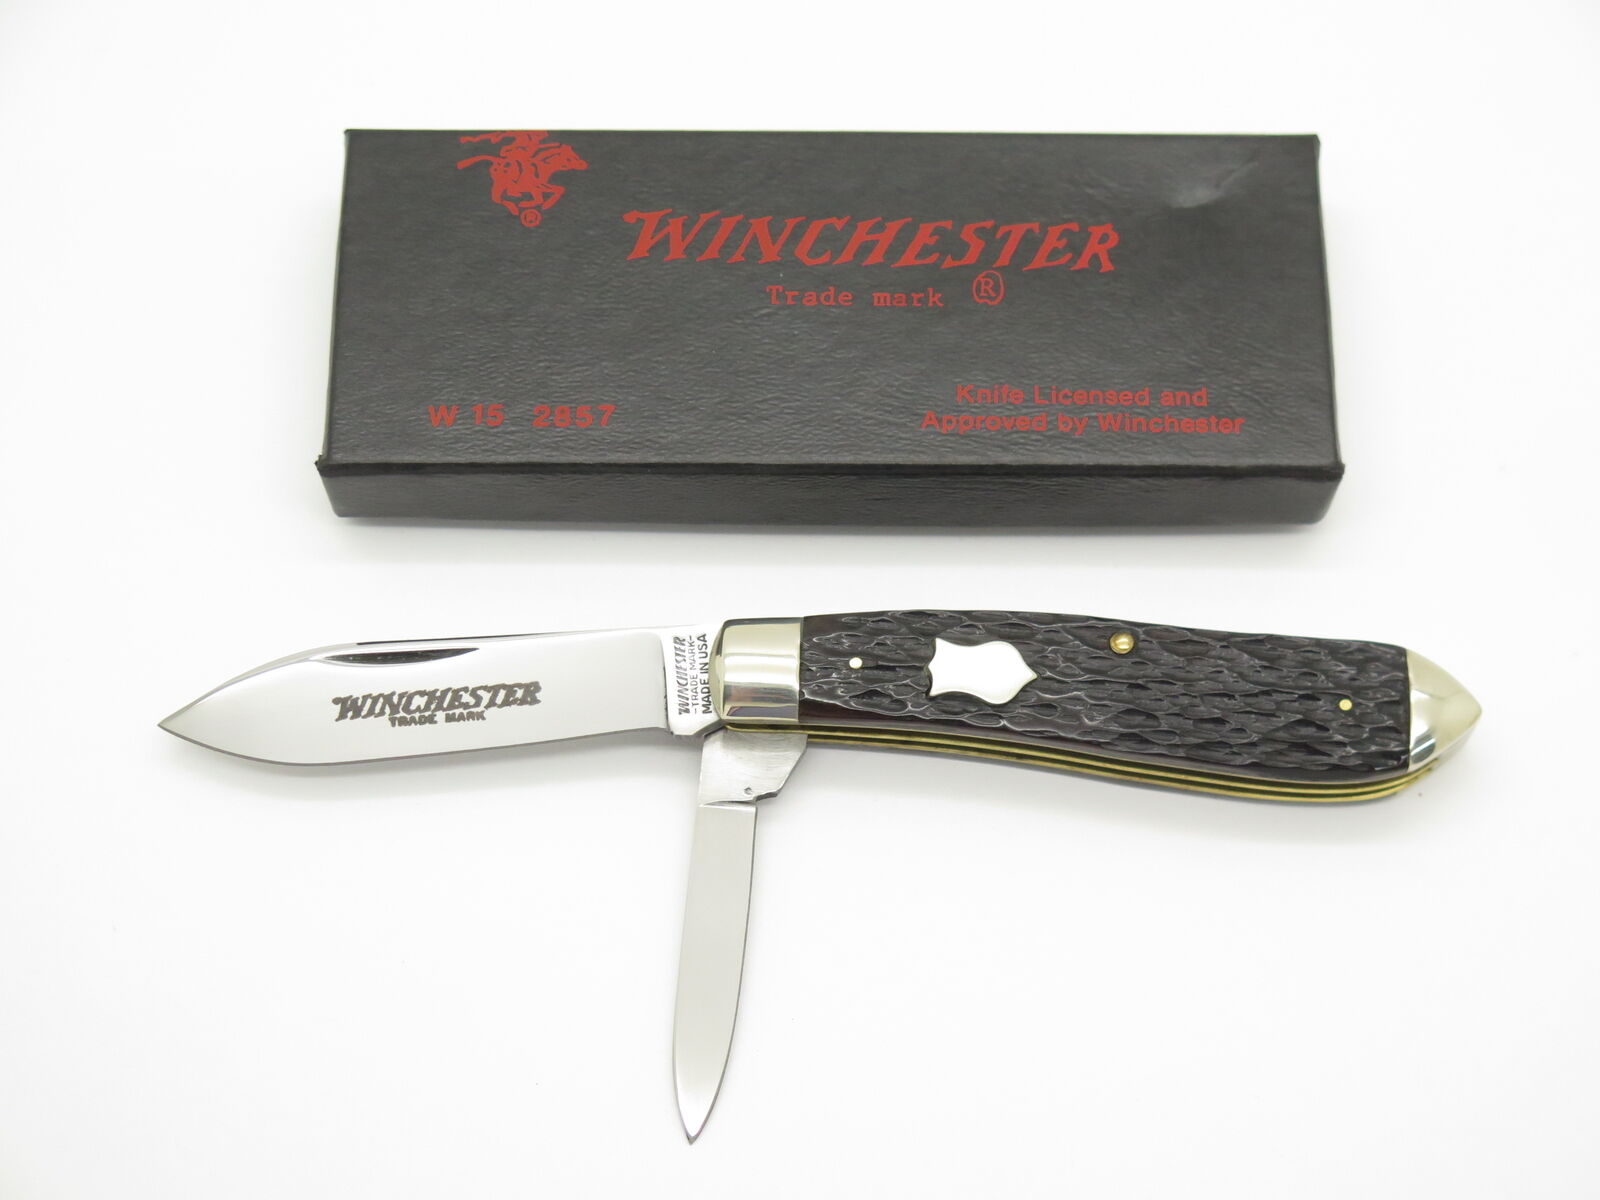 Vintage 1987 Winchester USA 2857 Jigged Bone Torpedo Jack Folding Pocket Knife